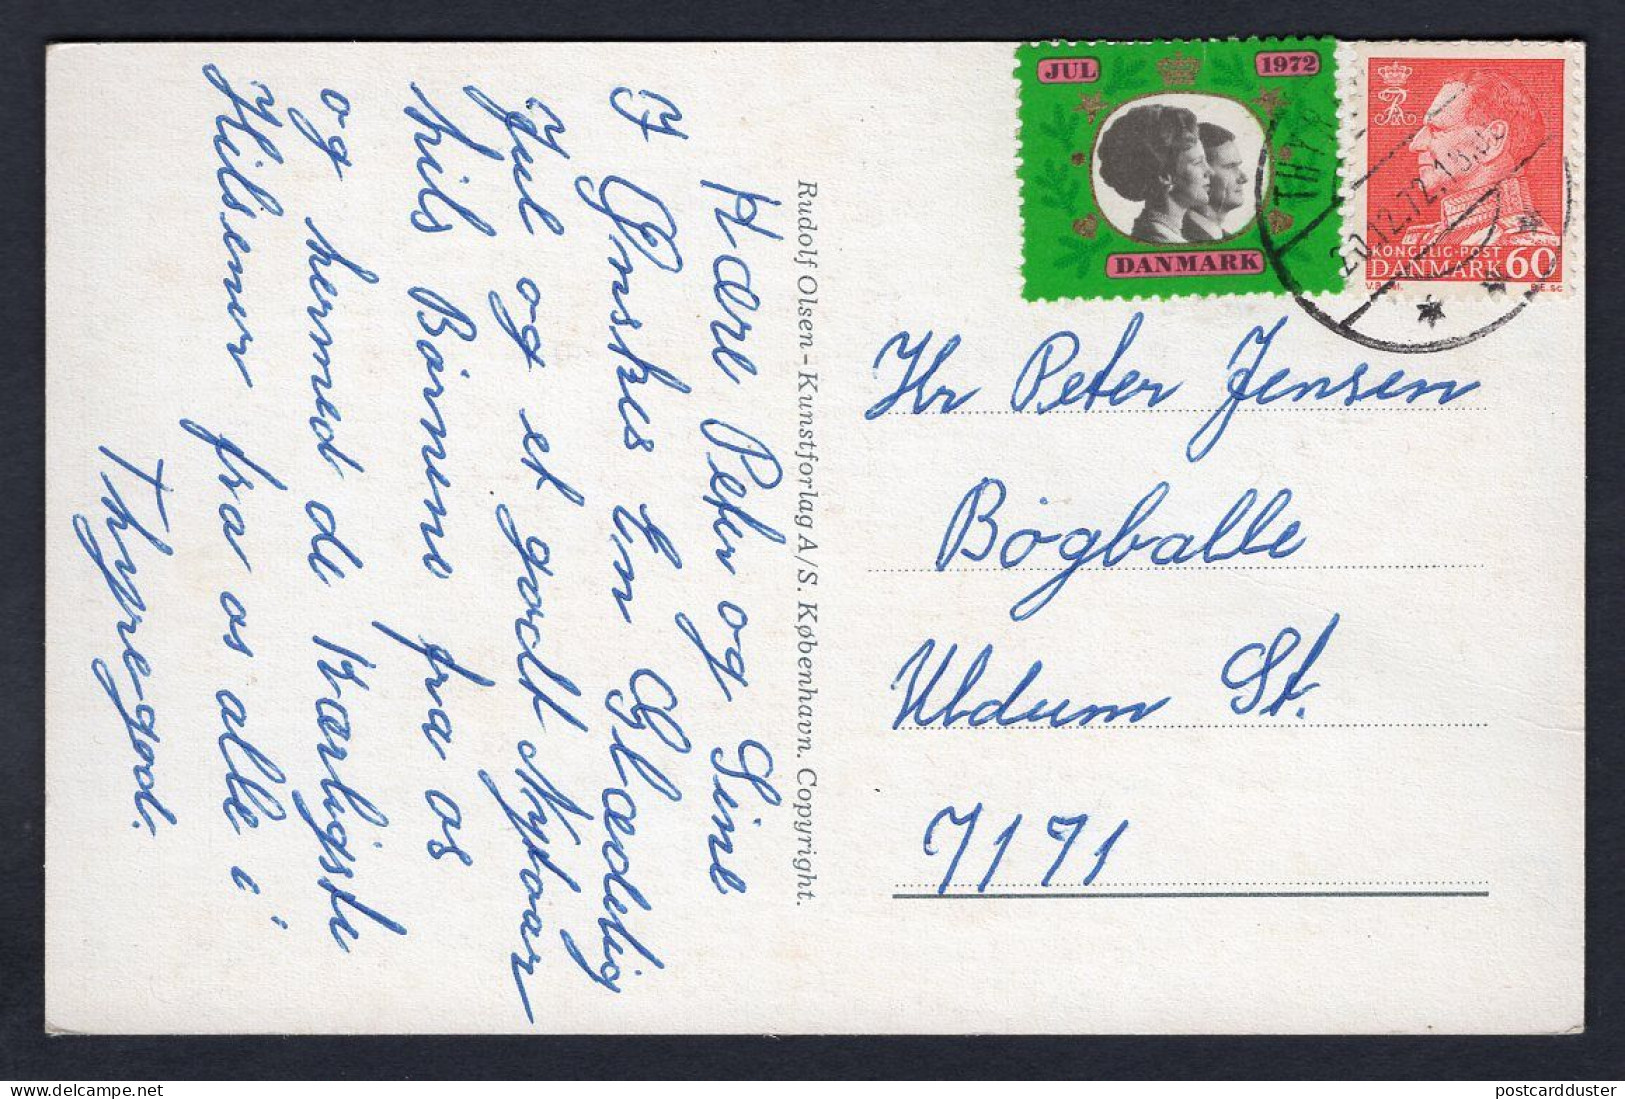 DENMARK 1972 Christmas Royals Cinderella On Santa Claus Postcard (p2132) - Briefe U. Dokumente